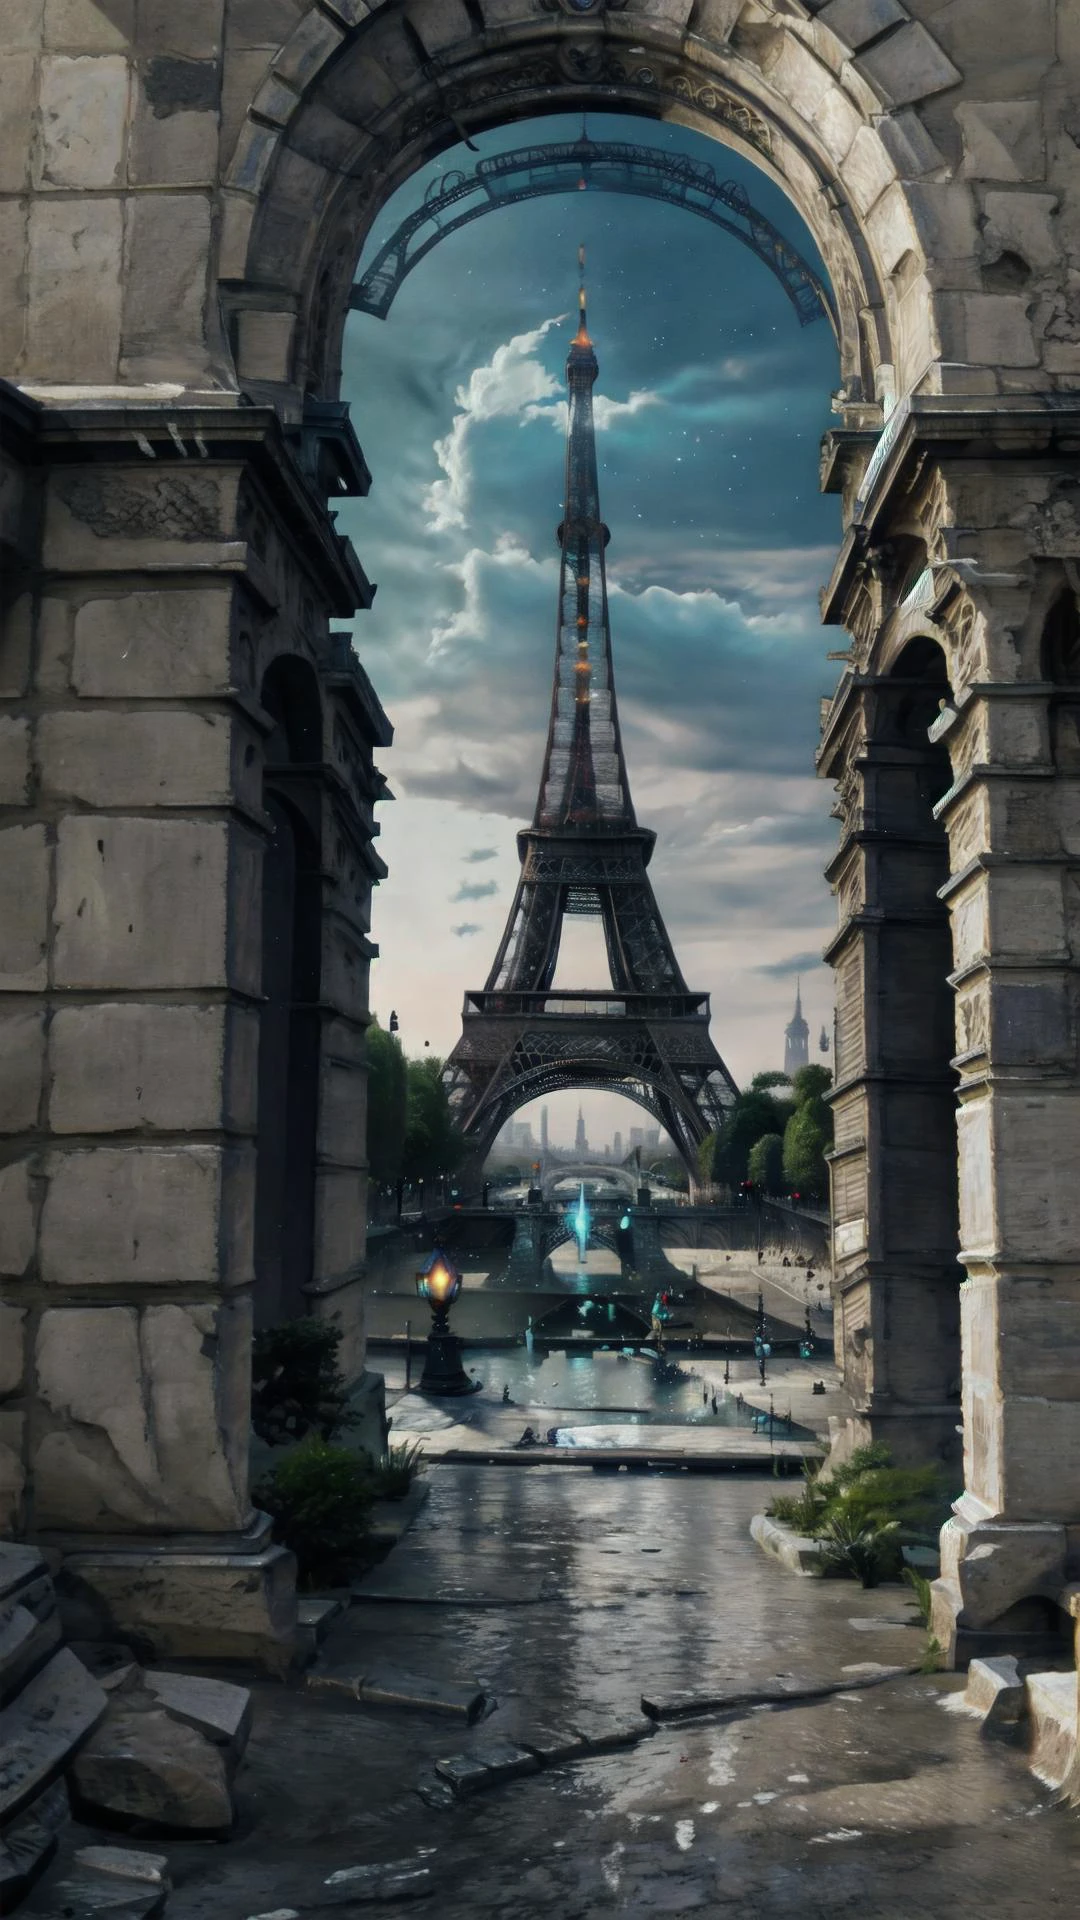 埃菲尔铁塔, 巴黎, 法国, 大樓, 塔, 休息, 沒有人類, 休息, 灵族世界, 灵石, 幽灵骨. 靈族, 休息,